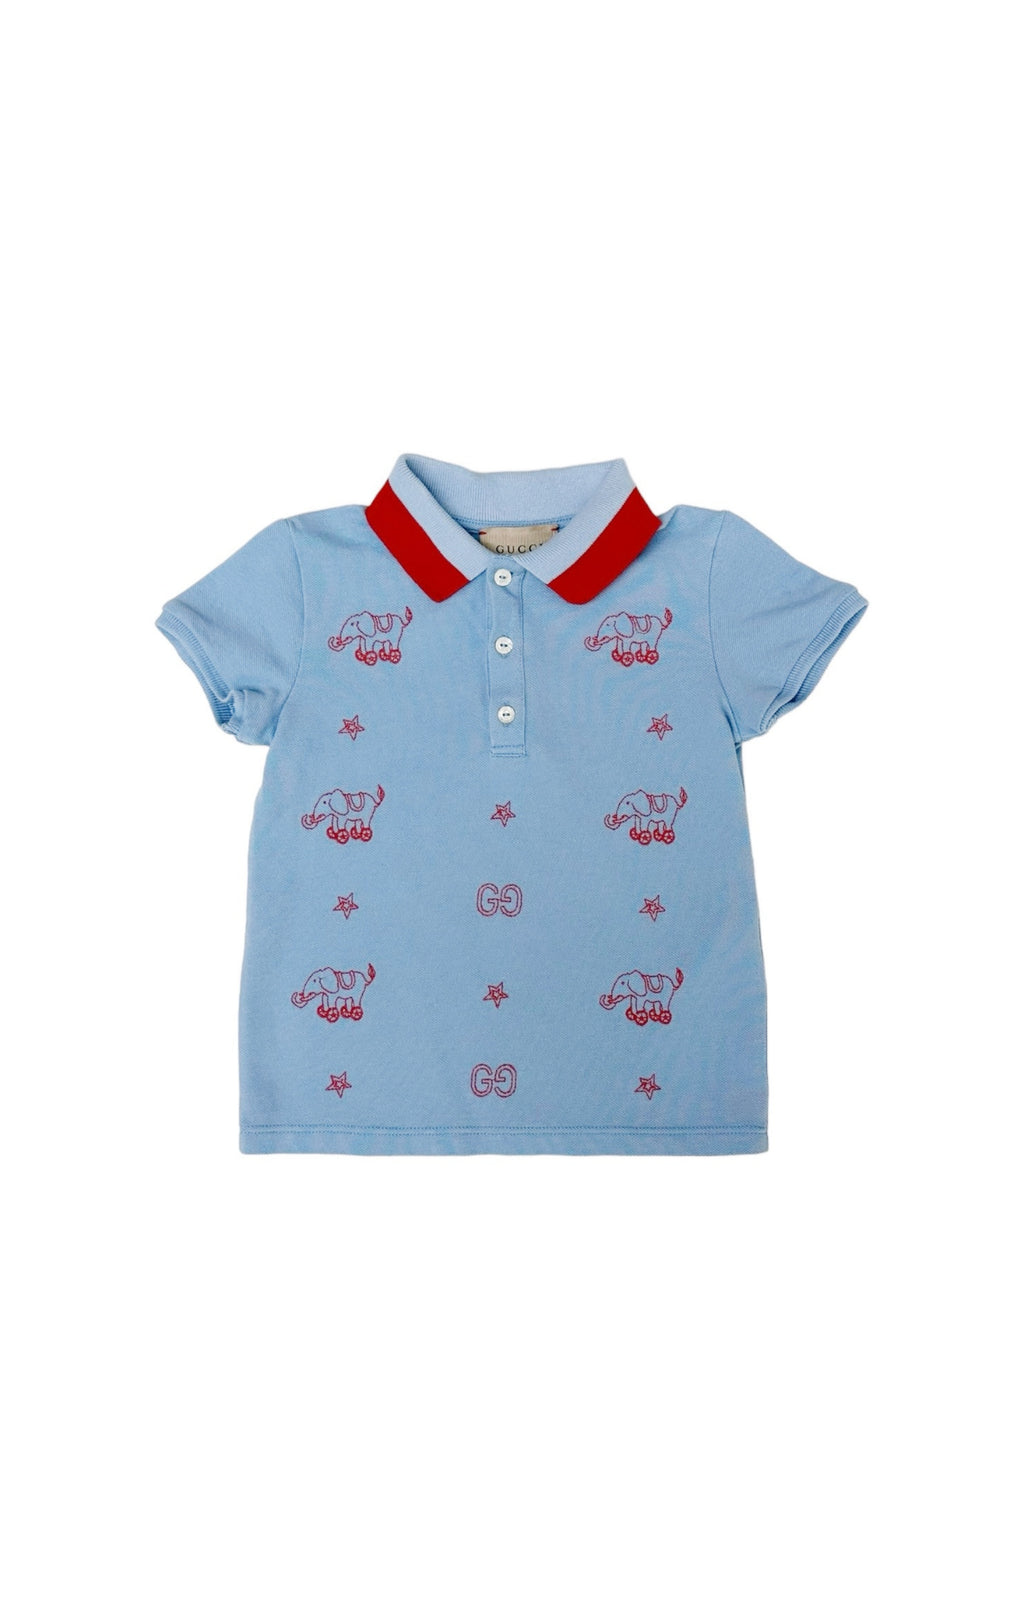 GUCCI (RARE) Shirt Size: Infant US 18-24 Months